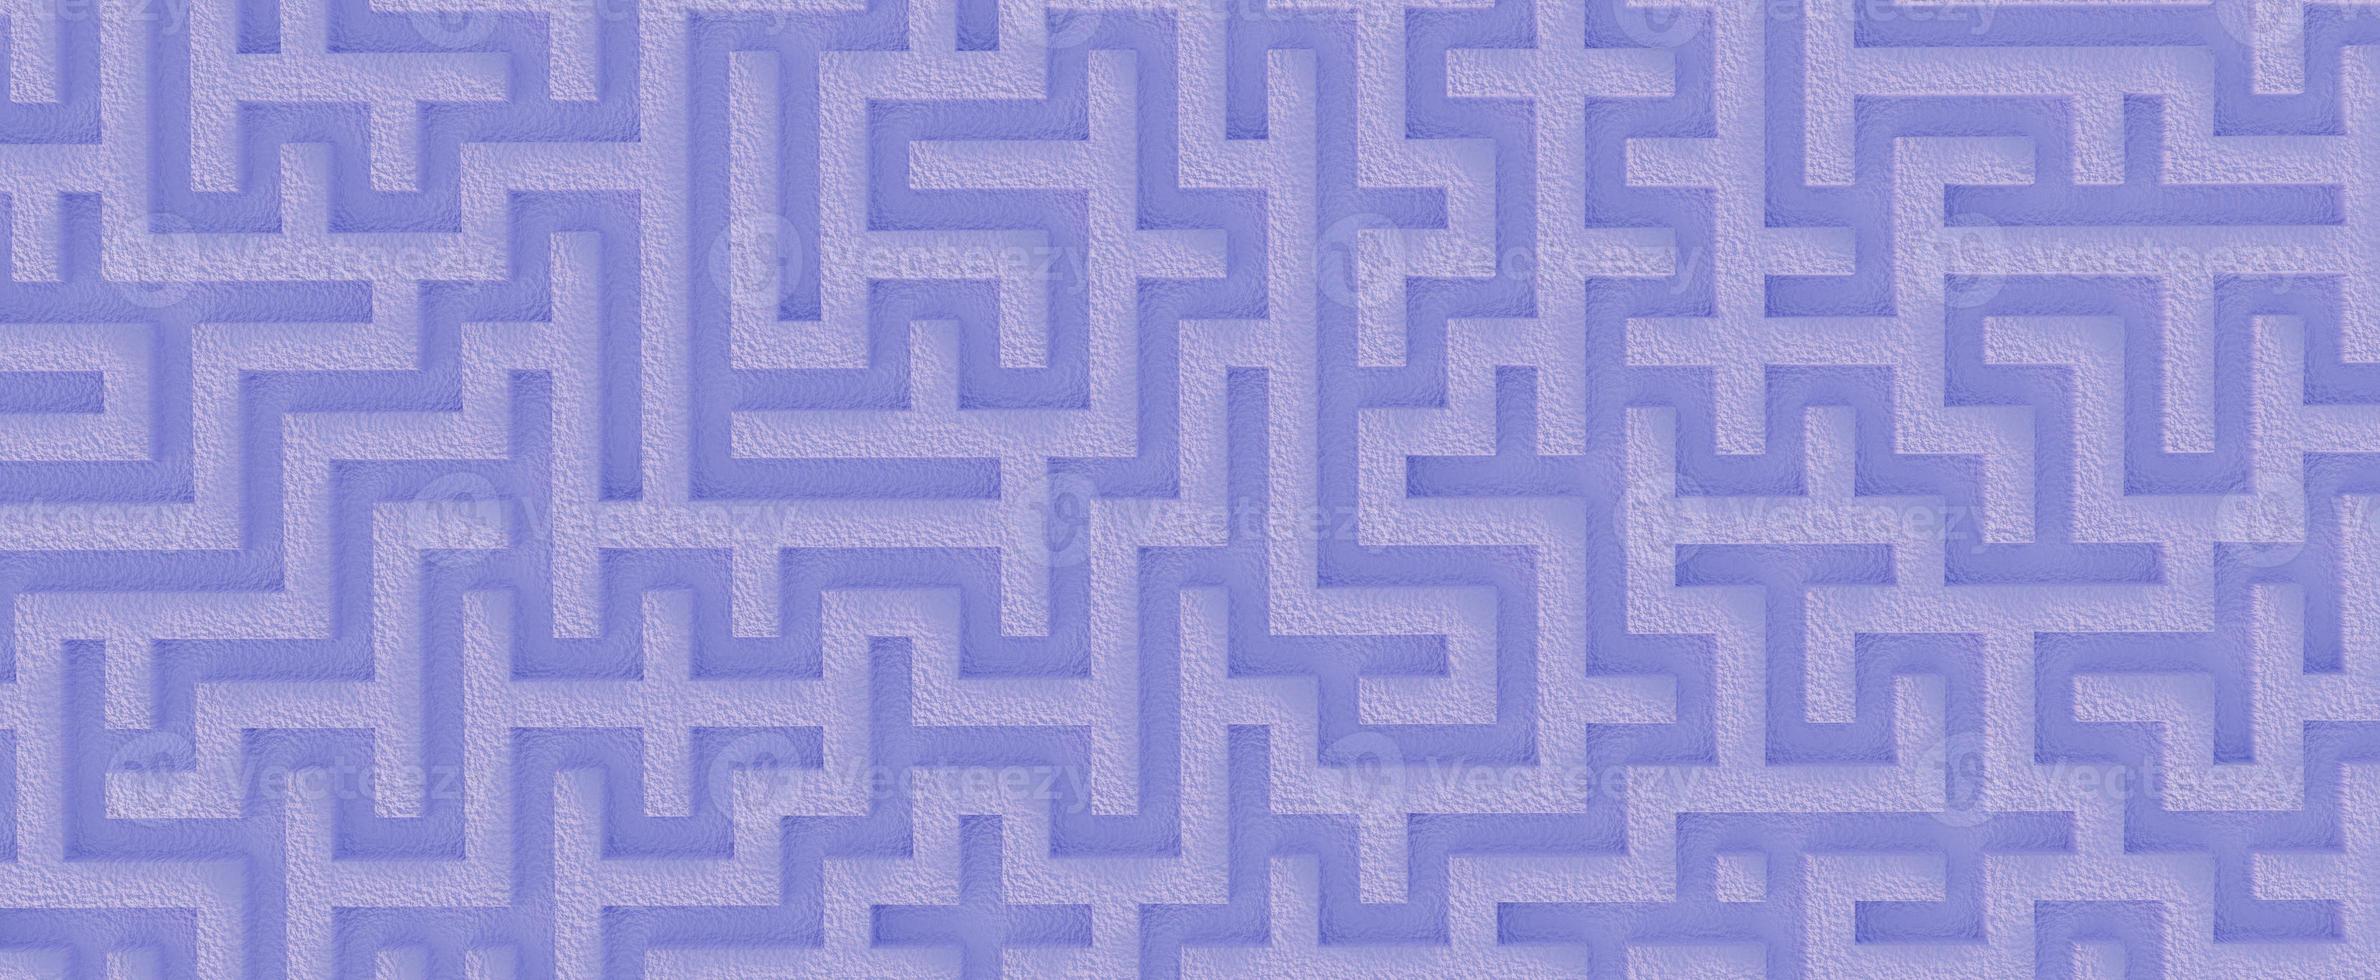 gewundenes Steinlabyrinth. blaues leeres Puzzle mit 3D-Rendering, weißem Sand und geometrischen Puzzles. Strategie der Wahl und Lösung komplizierter Probleme im Leben foto